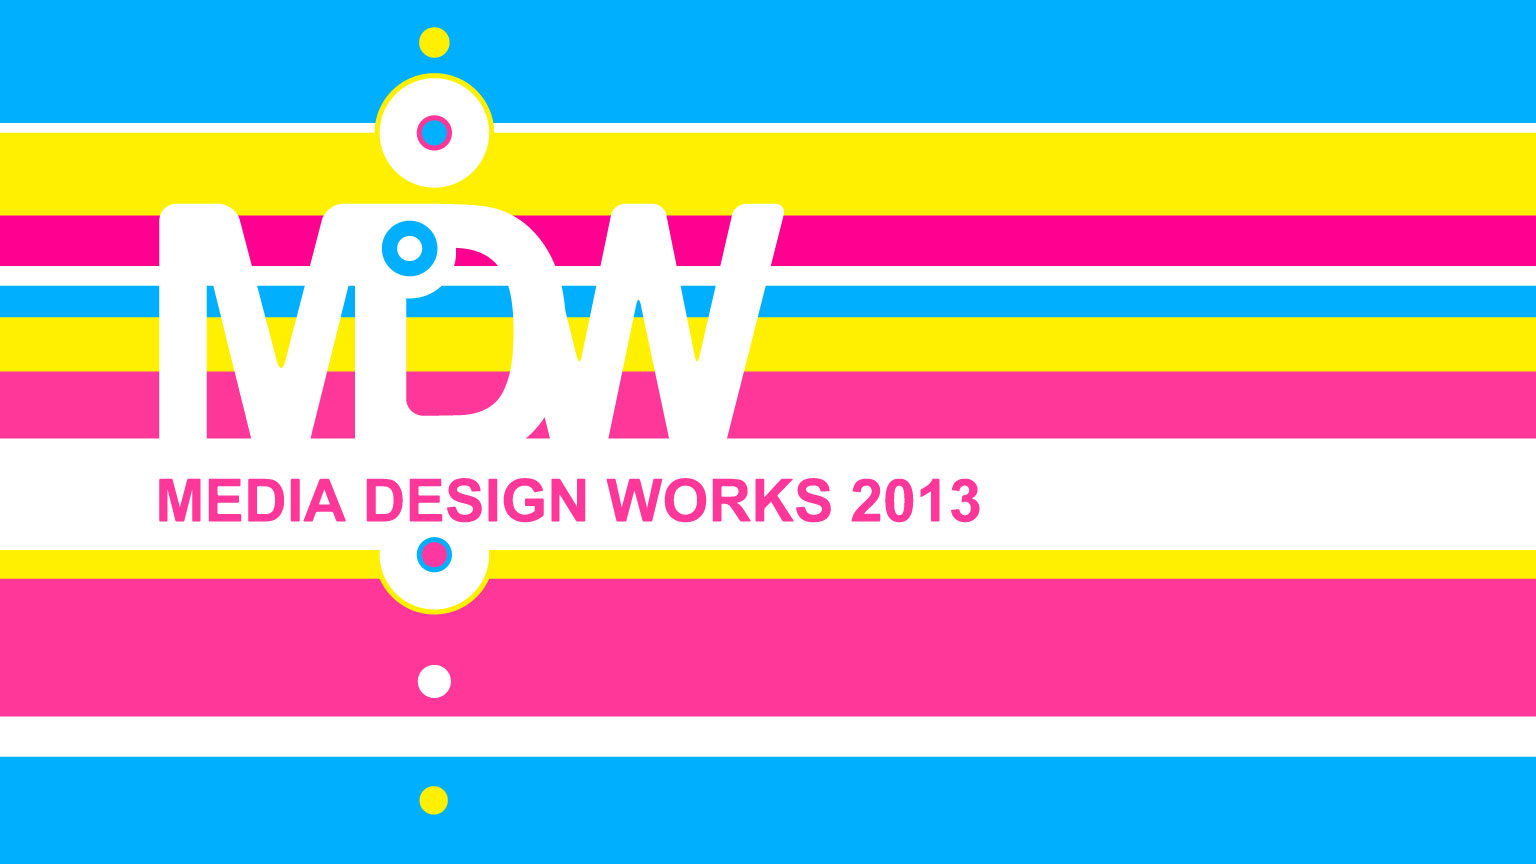 Media Design Works 2013のキービジュアルです。"M", "D" の文字が中央に白色で大きくあしらわれ、そのすぐ下には小さめの文字で "MEDIA DESIGN WORKS 2013" と書かれています。背景はビビッドな赤、青、黄、白色を使ったランダムな太さのストライプです。